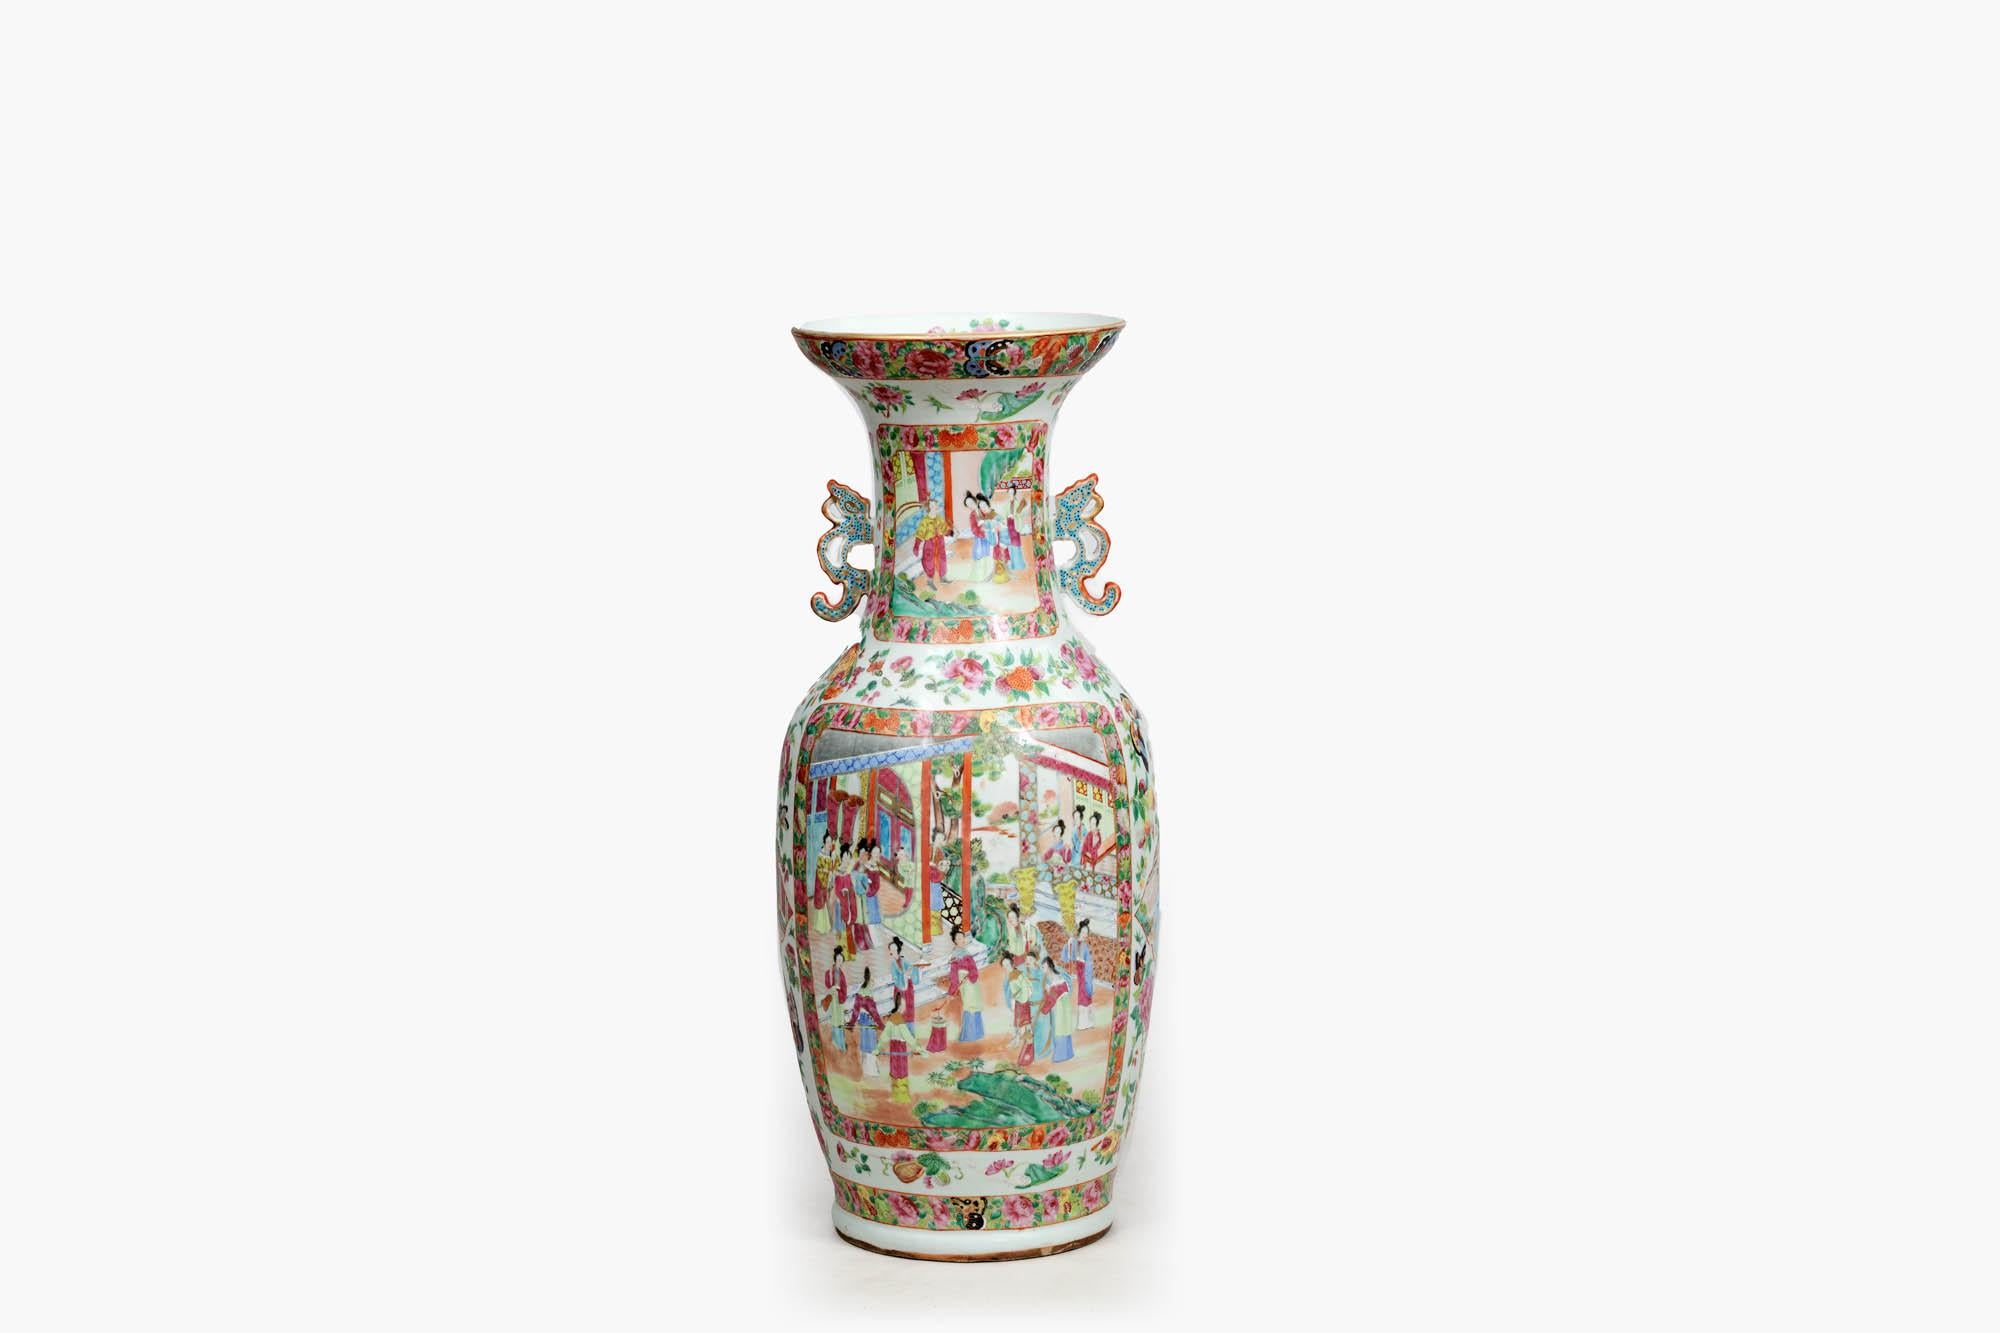 Handbemalte kantonesische Vase aus dem 19. Jahrhundert im Famille-Rose-Stil. Der balusterförmige Korpus mit hell bemalten Paneelen zeigt Innenszenen von Höflingen und ihren Dienern in üppig verzierten Blumenrabatten. Der Hals ist mit Drachengriffen